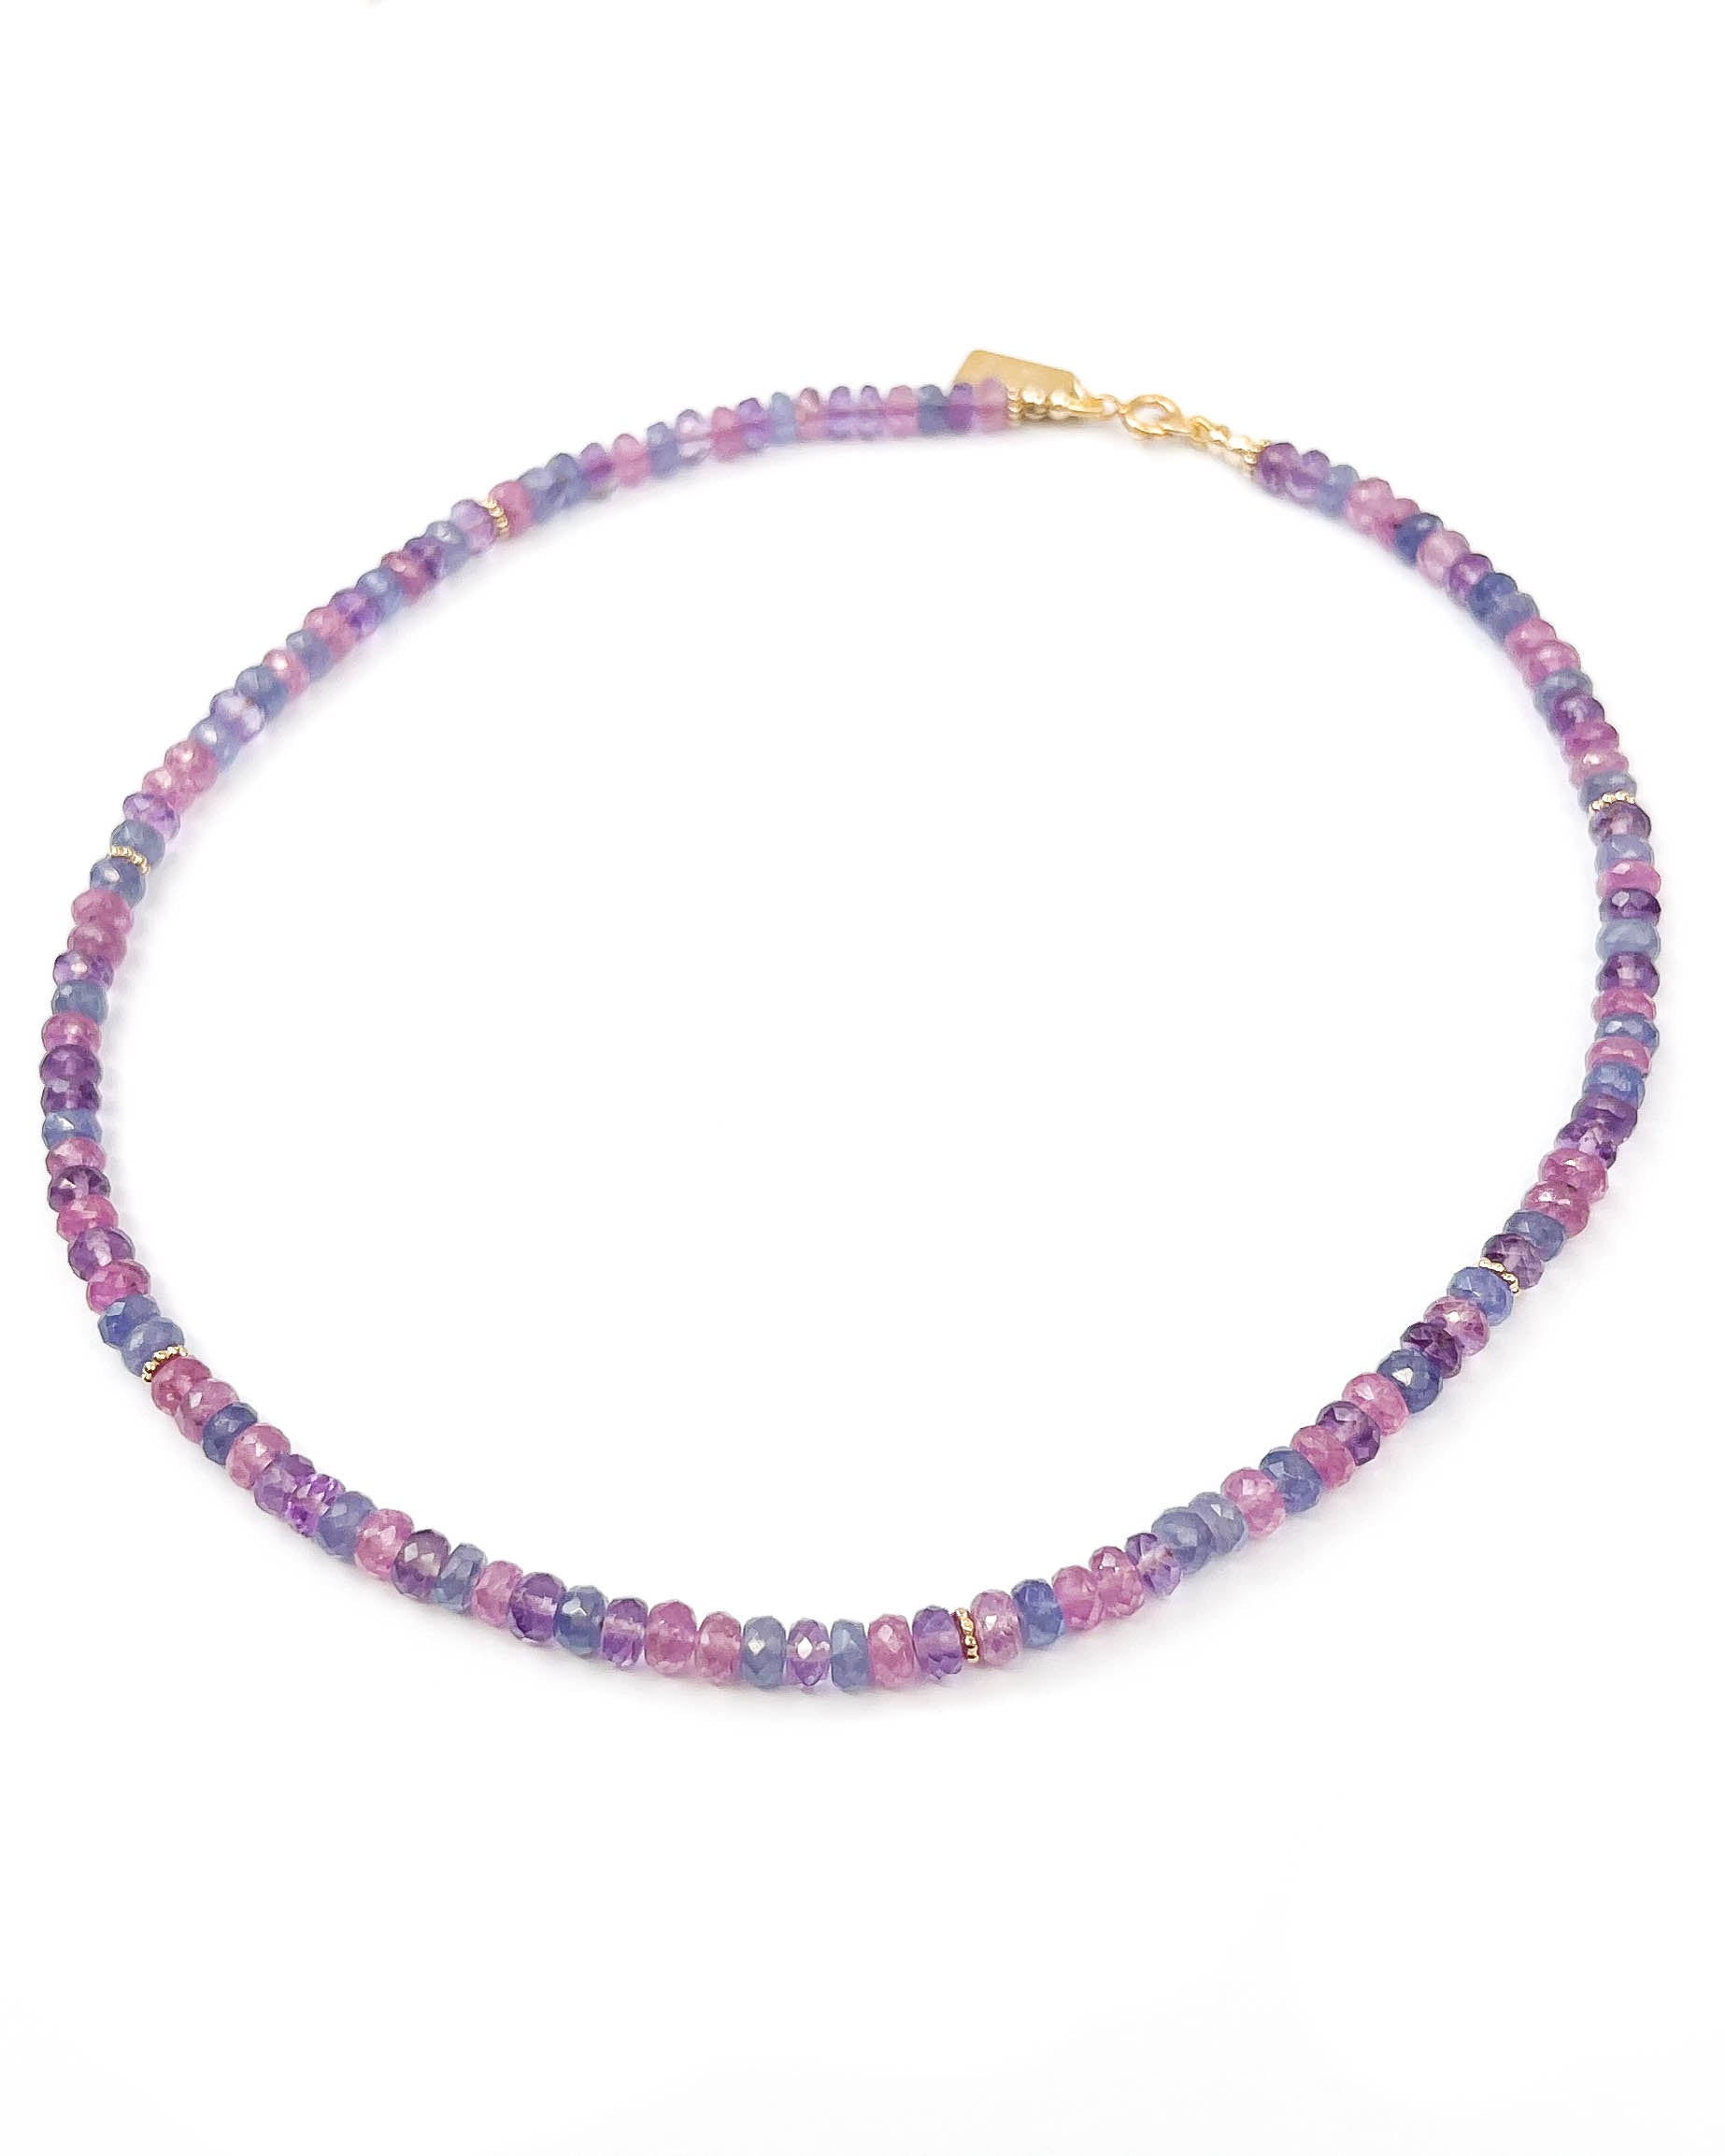 Tanzanite, Pink Sapphire, & Amethyst Gemstone Strand Necklace